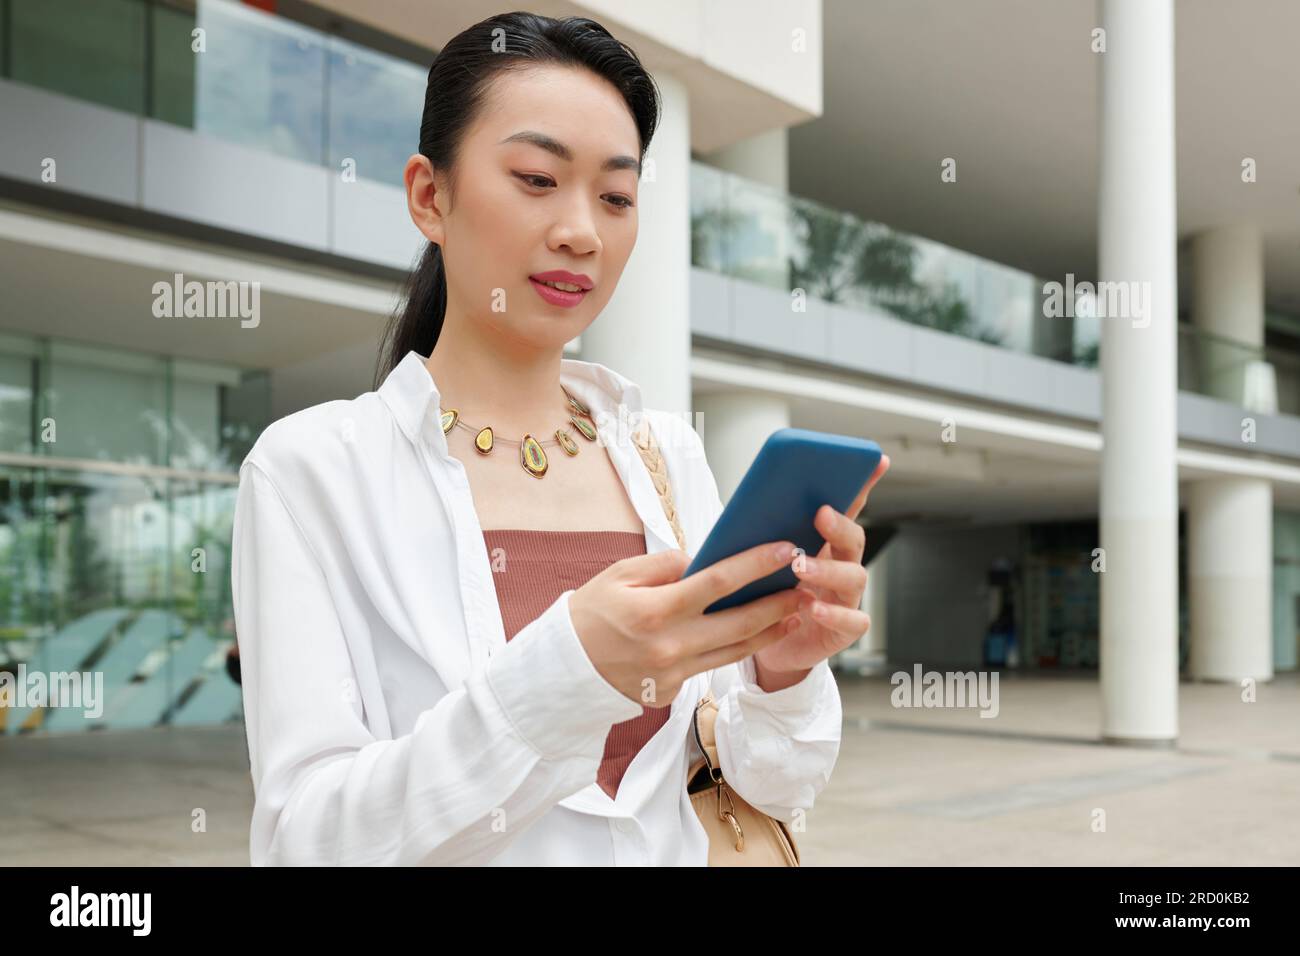 Femme d'affaires joyeuse lisant des messages texte de son collègue lorsqu'elle se tient debout à l'extérieur Banque D'Images